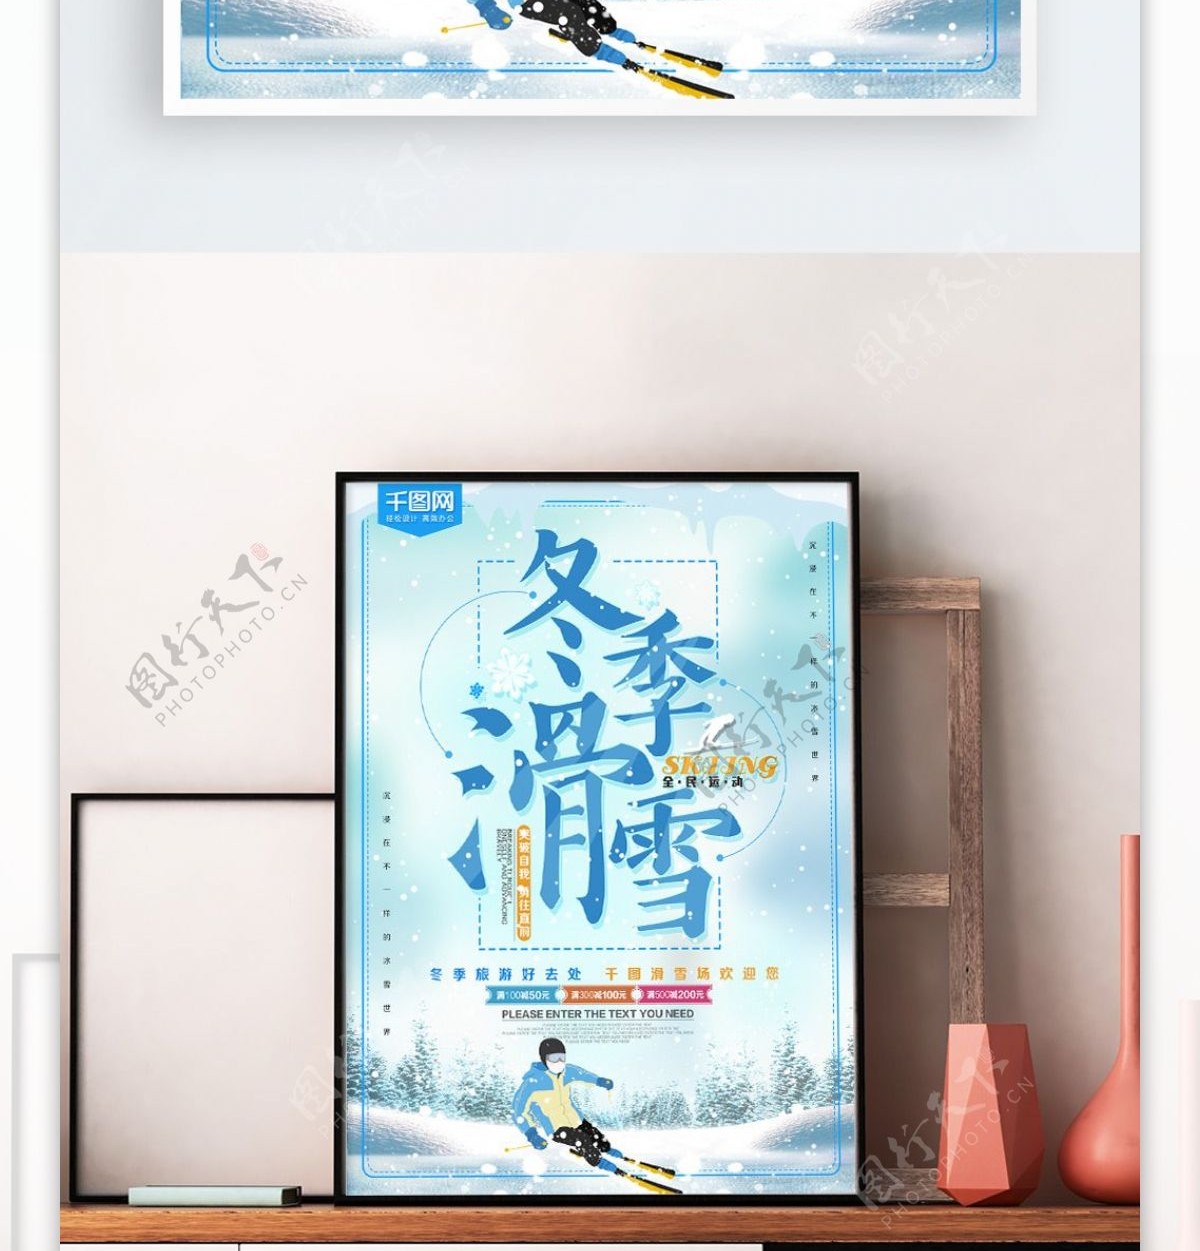 冬季旅游滑雪运动促销海报